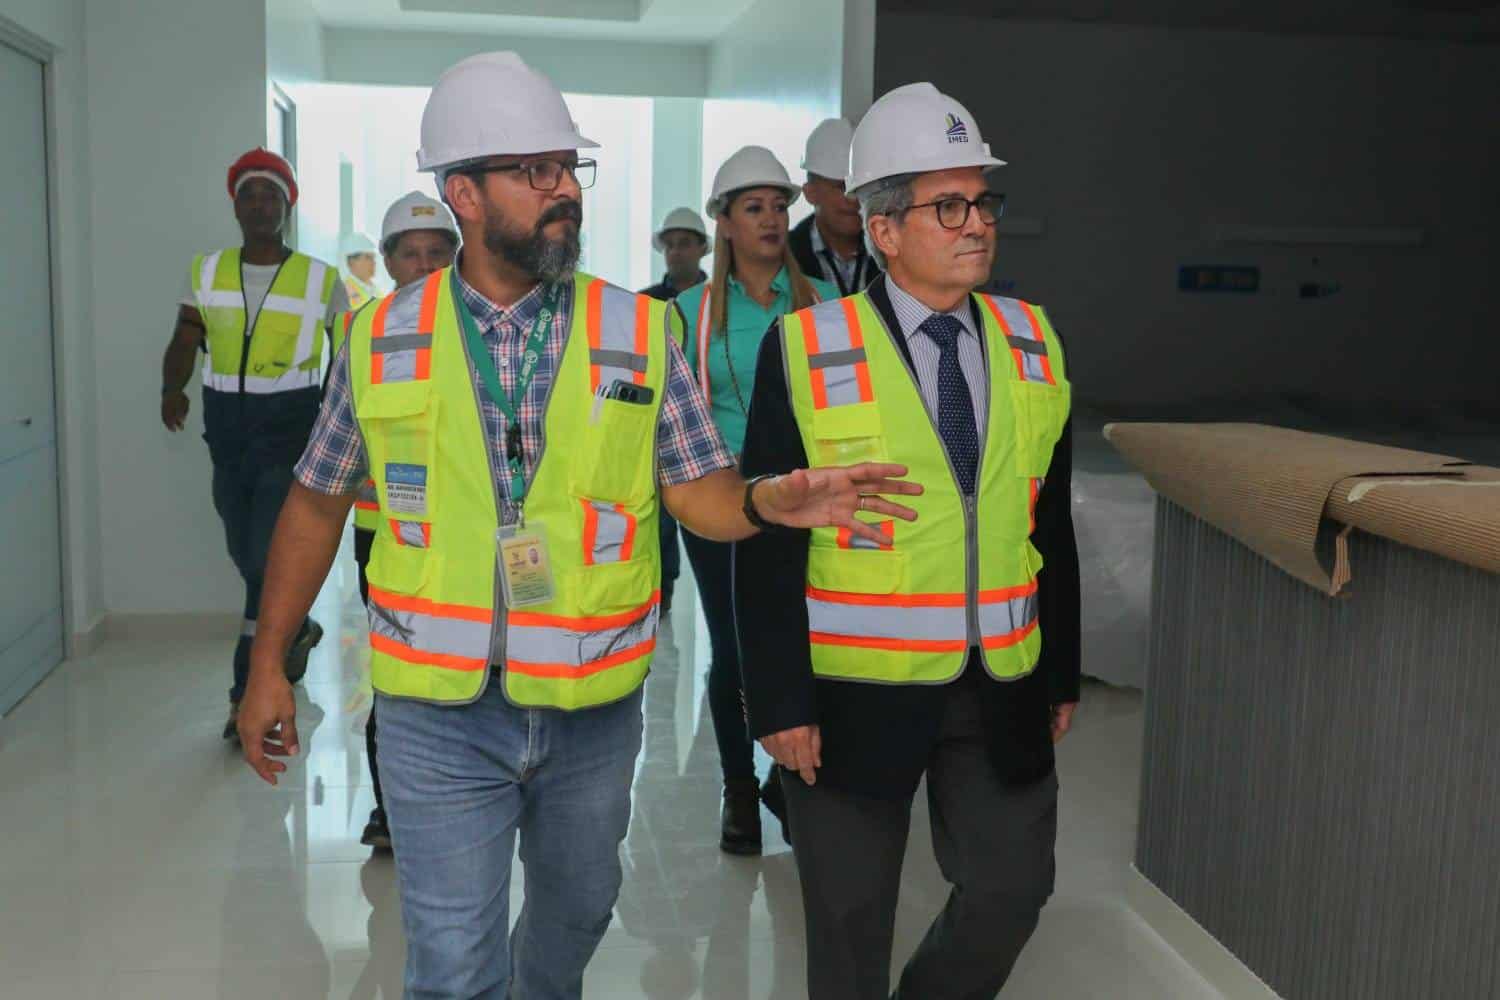 Ministro de Salud inspecciona obras en hospital Manuel Amador Guerrero en Colón